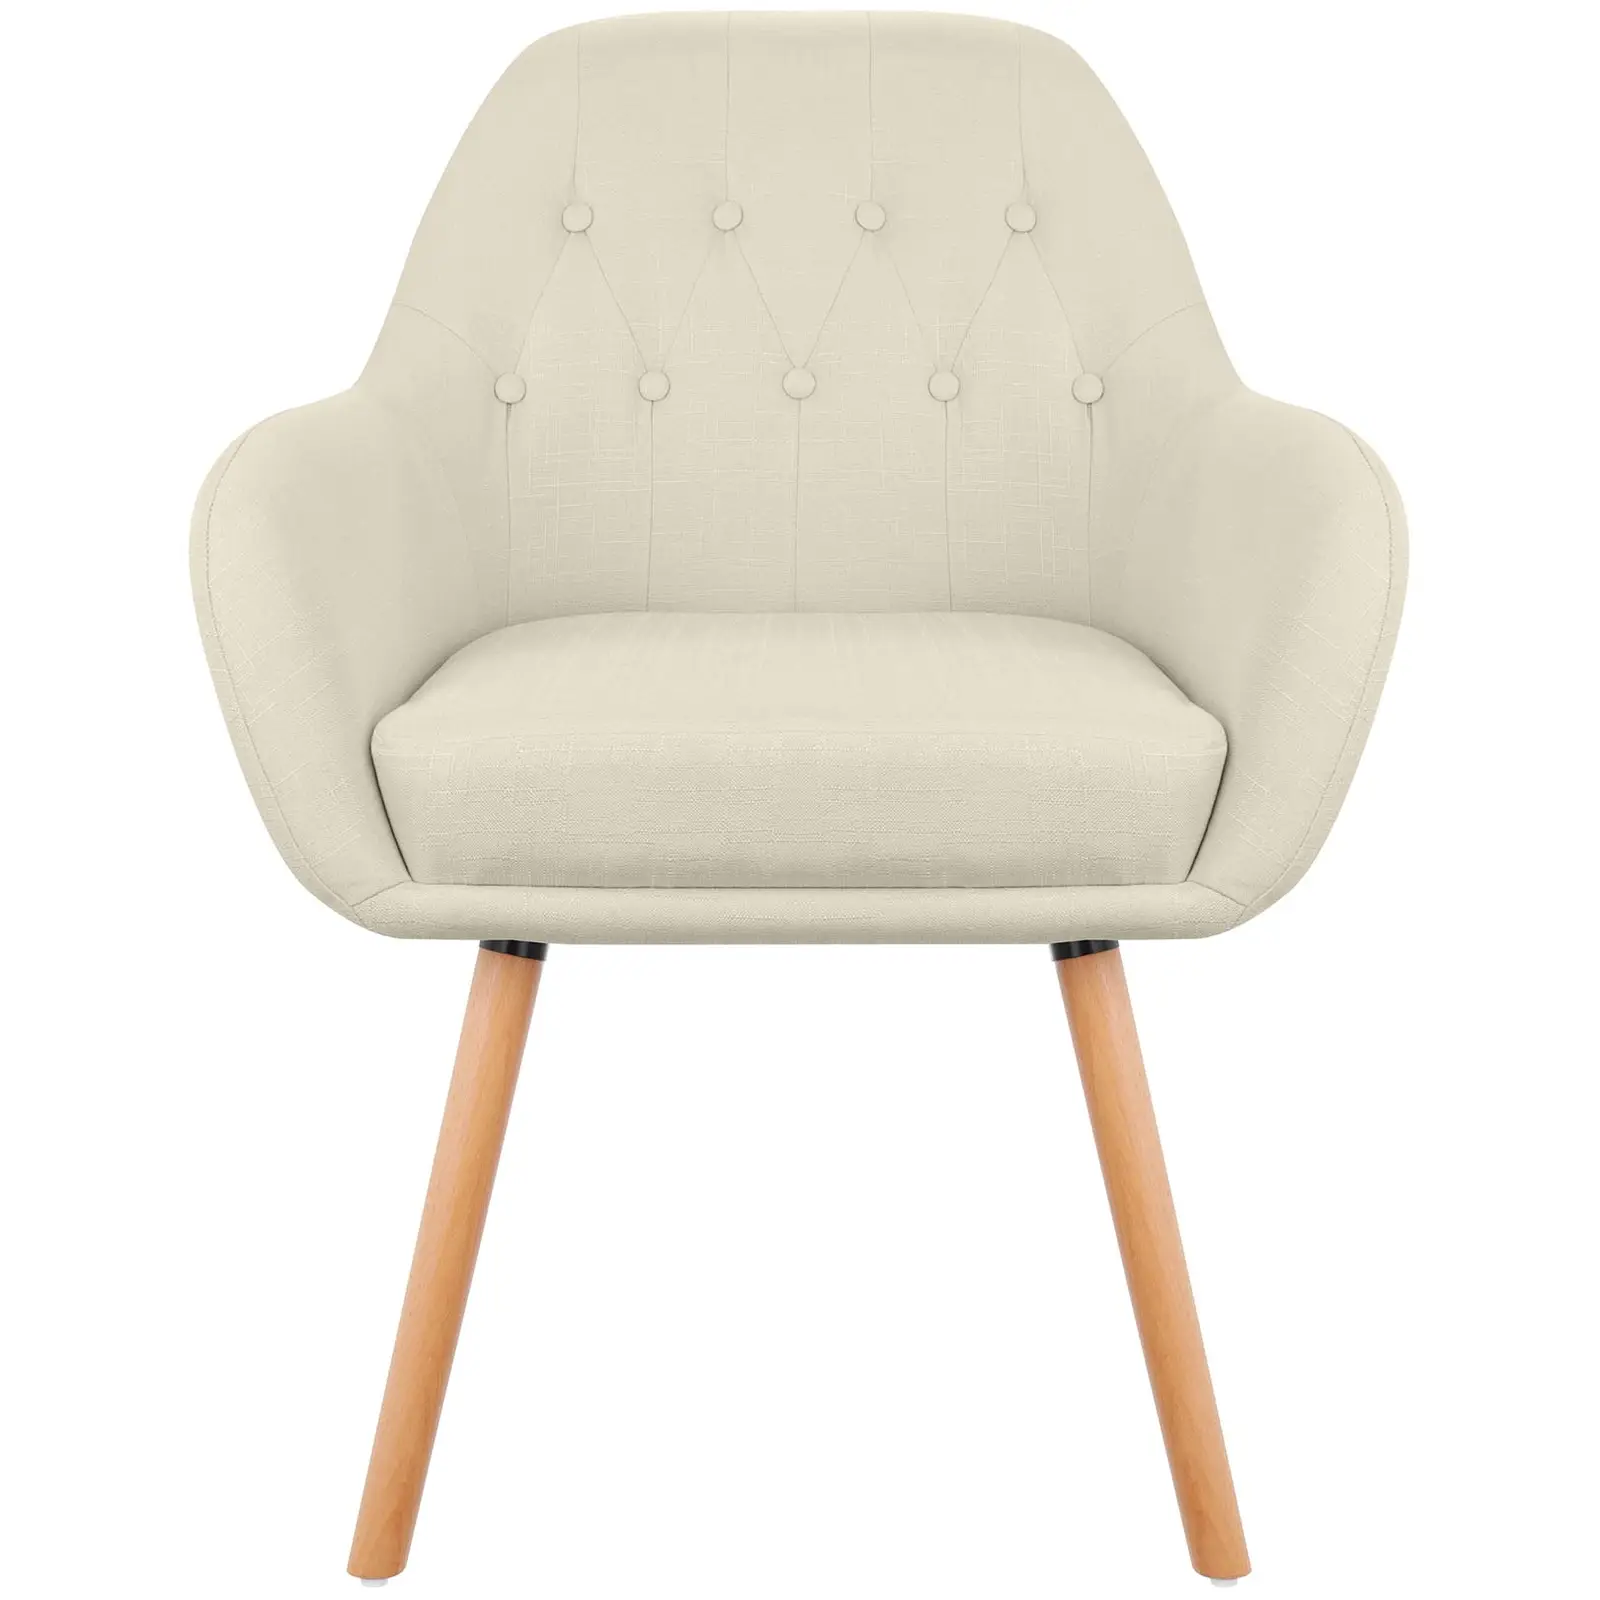 Chaise en tissu - 150 kg max. - Surface d'assise de 45 x 42 cm - Coloris beige